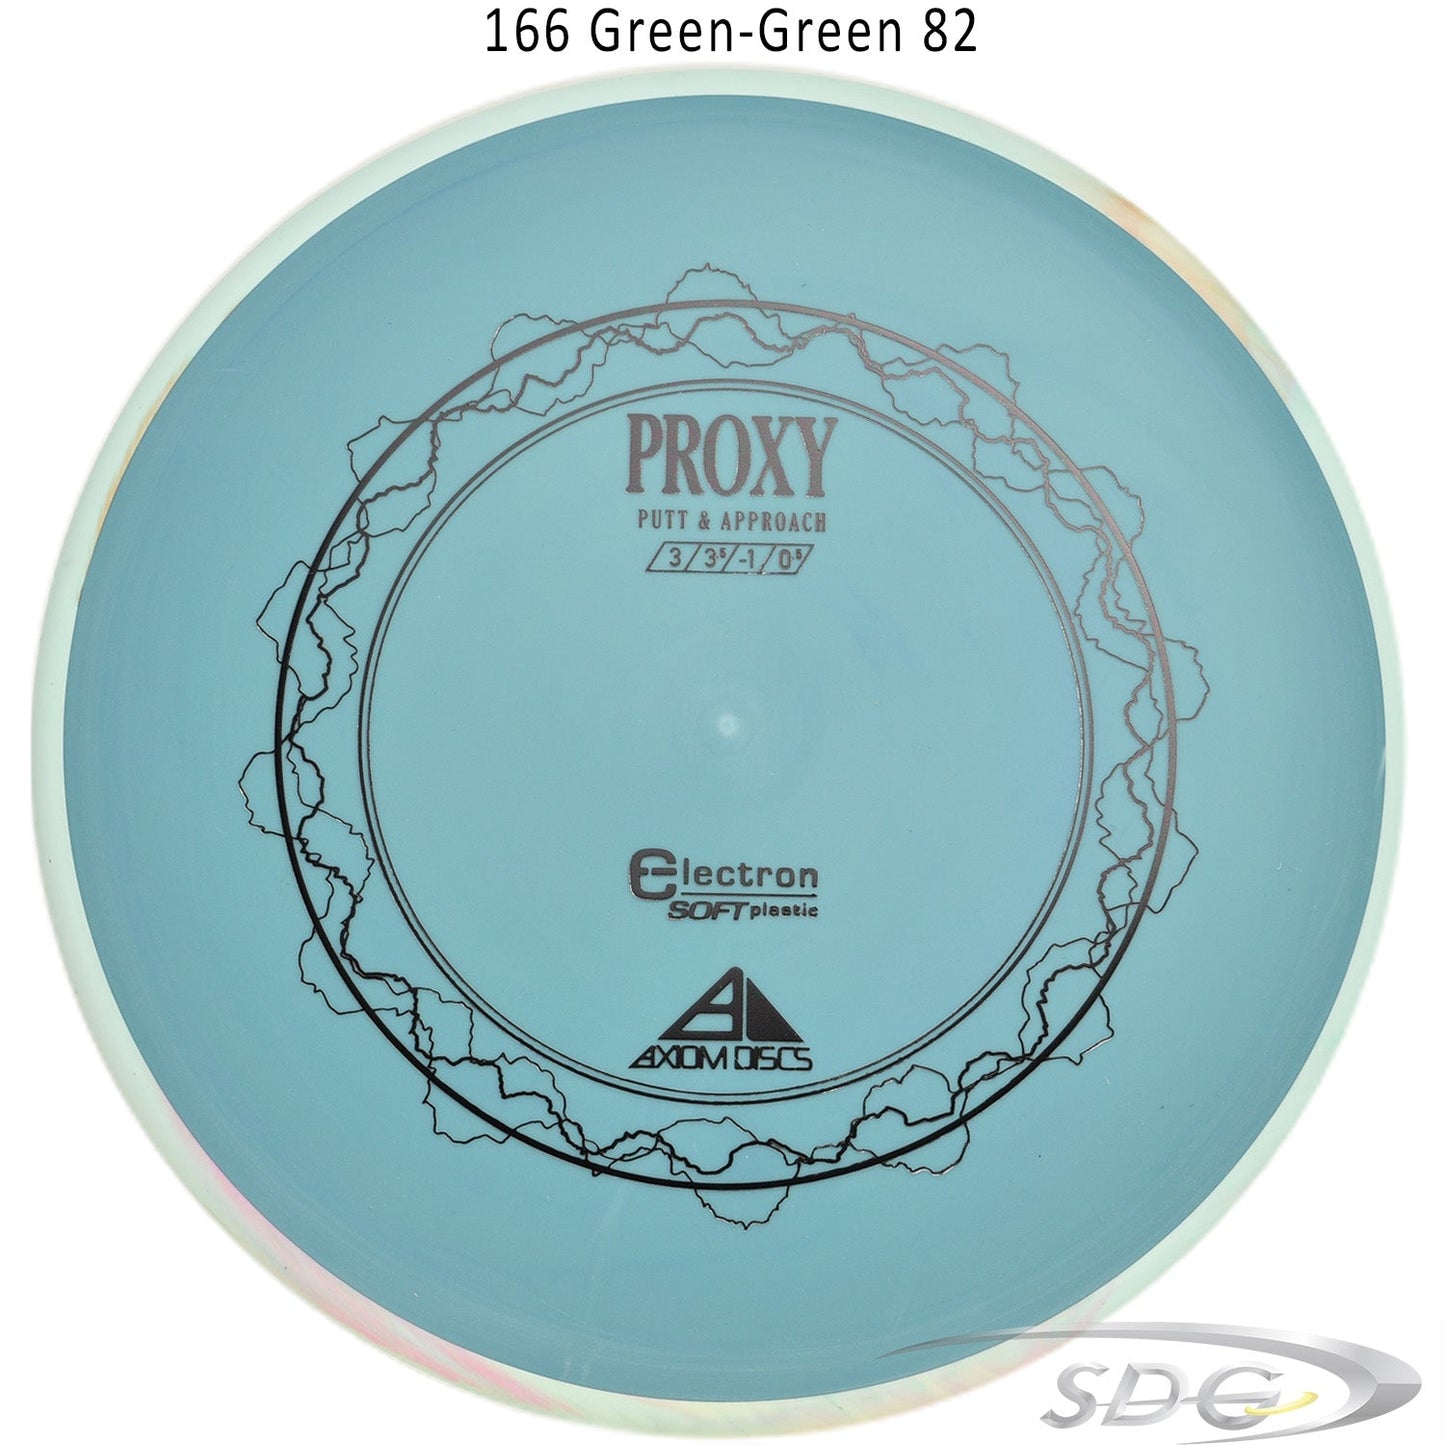 axiom-electron-proxy-soft-disc-golf-putt-approach 166 Green-Green 82 